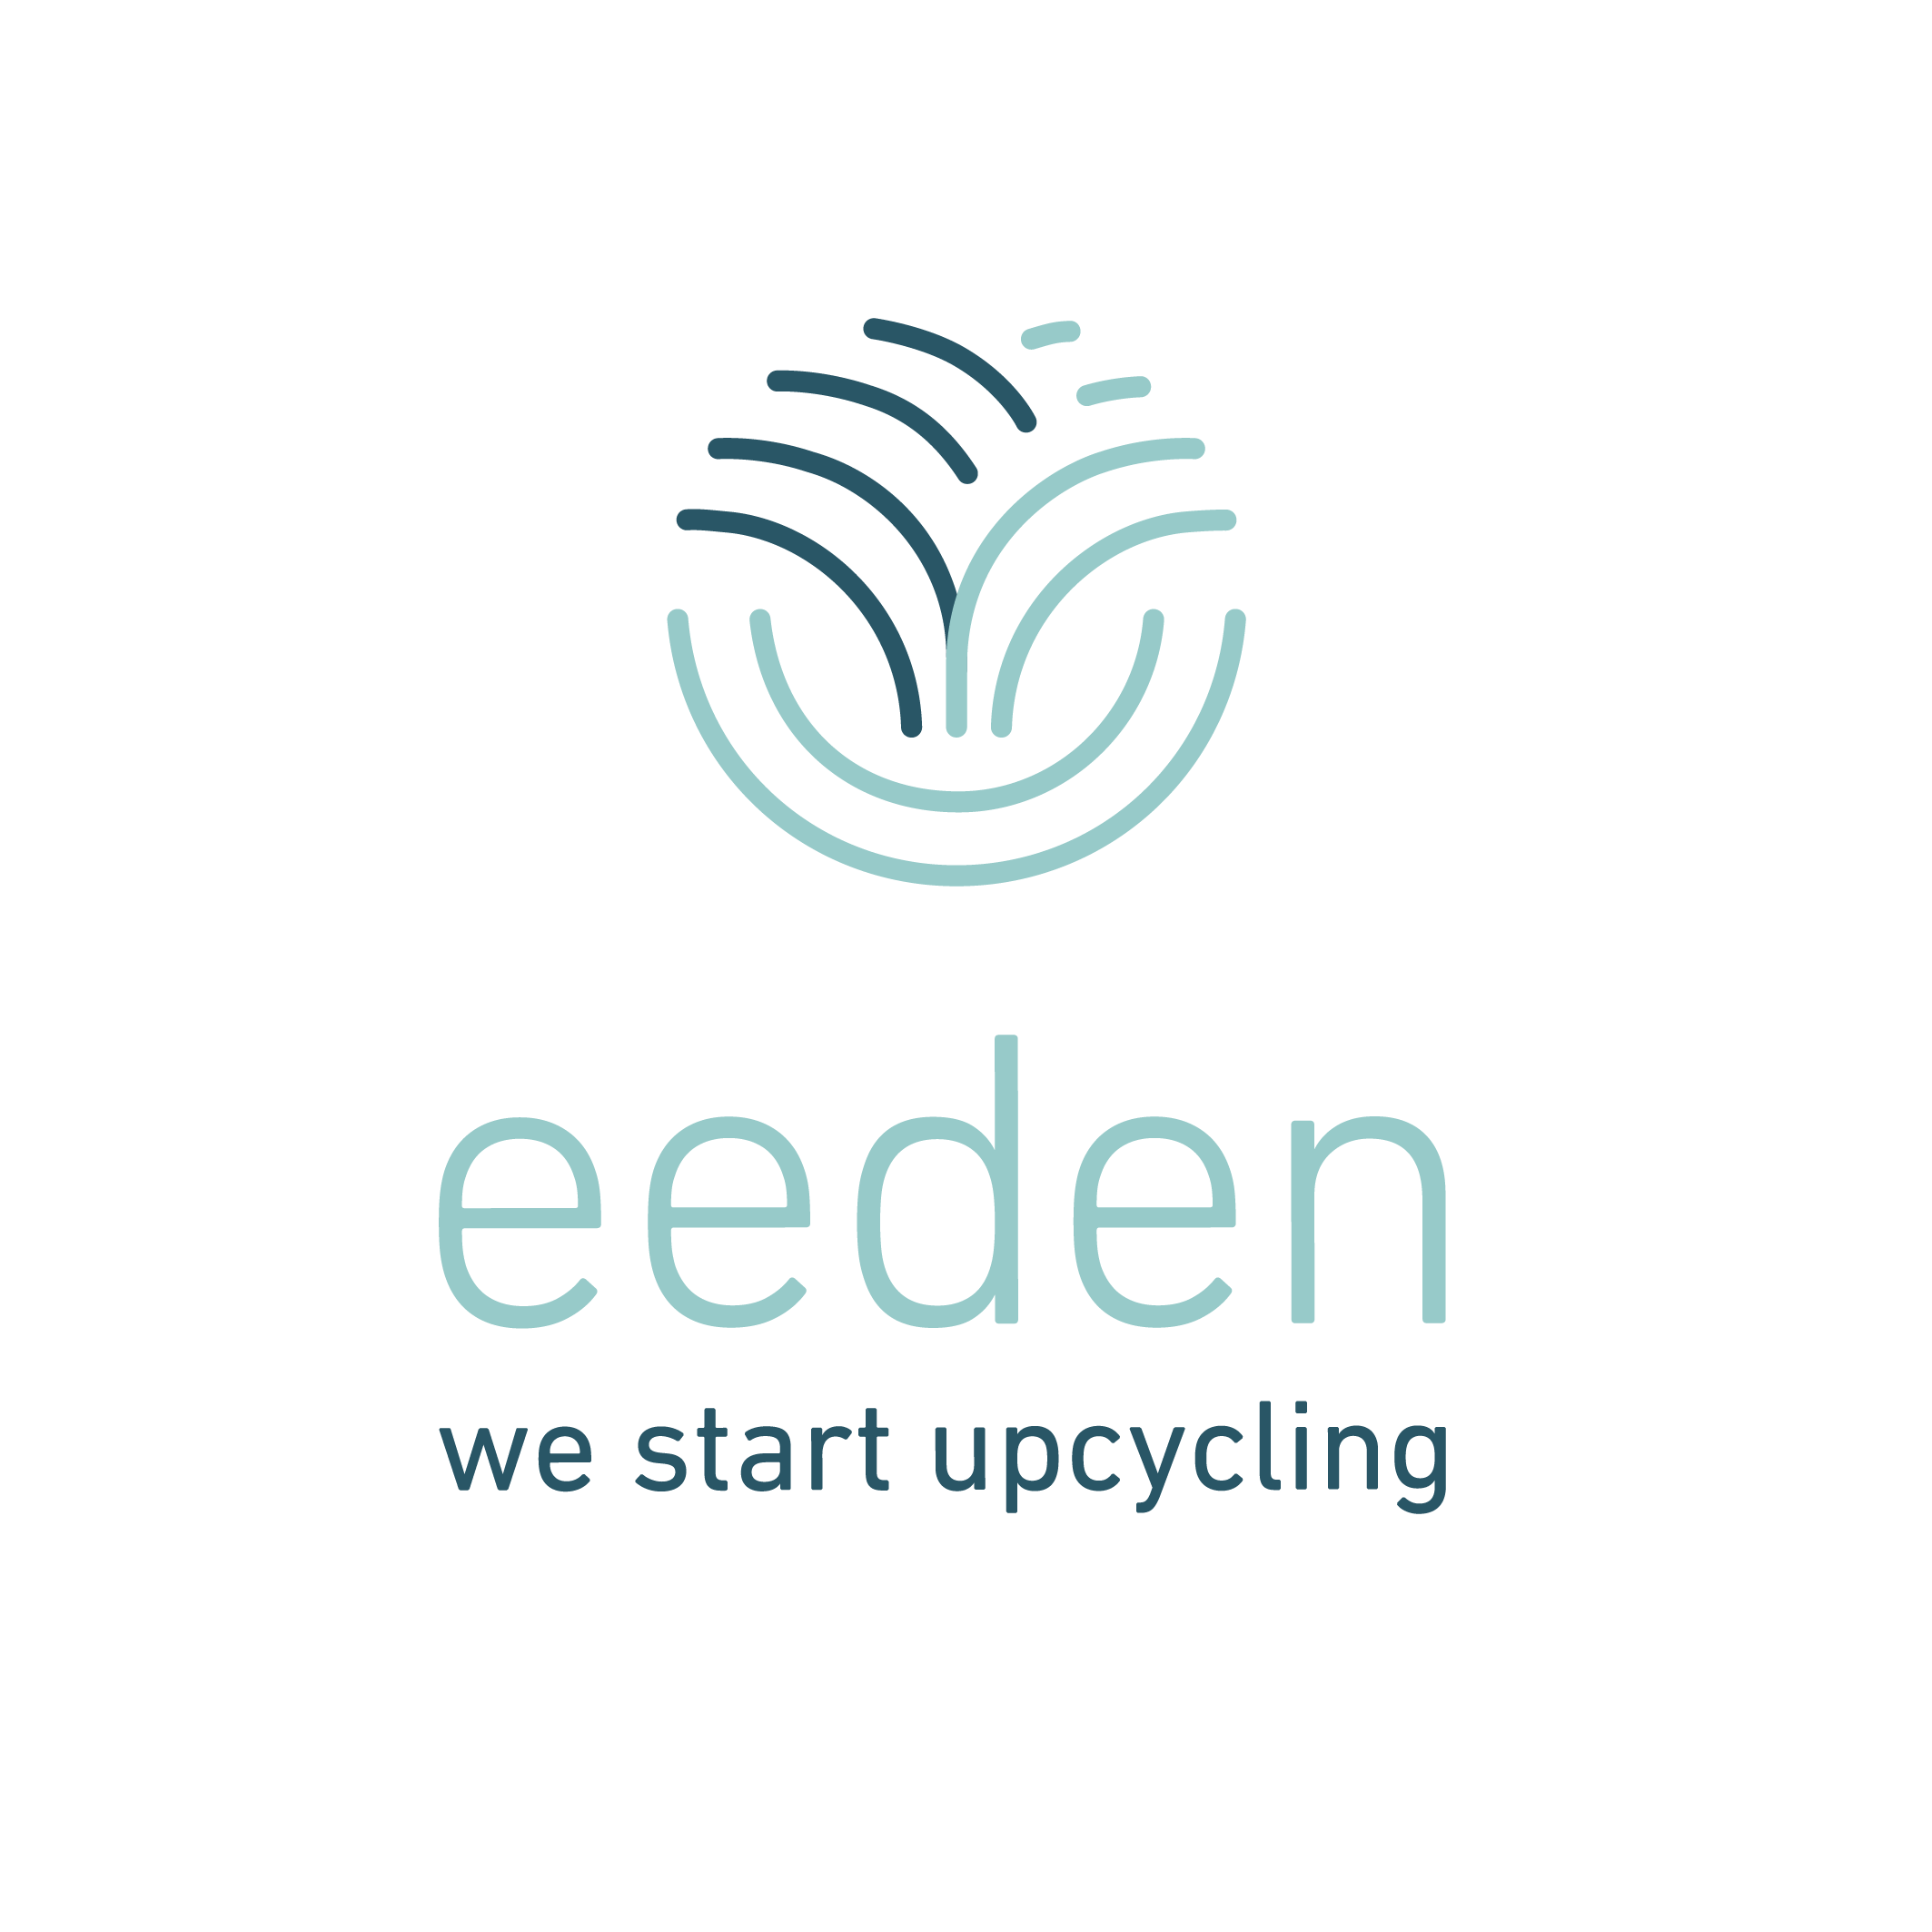 eeden GmbH